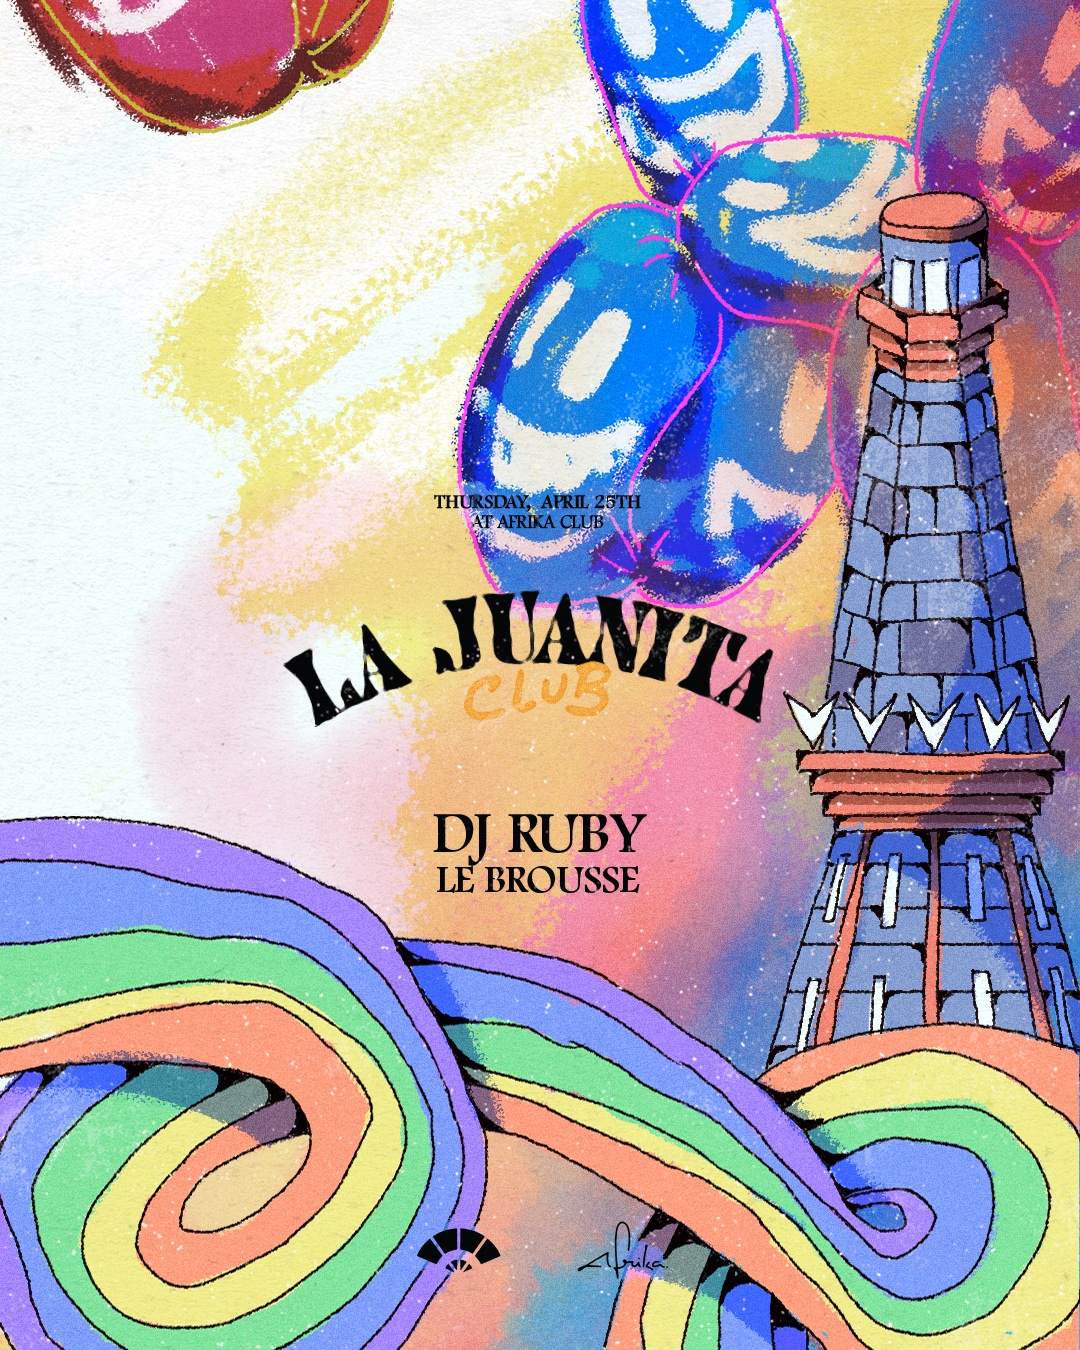 La Juanita Club @ Afrika feat. DJ Ruby - Página frontal